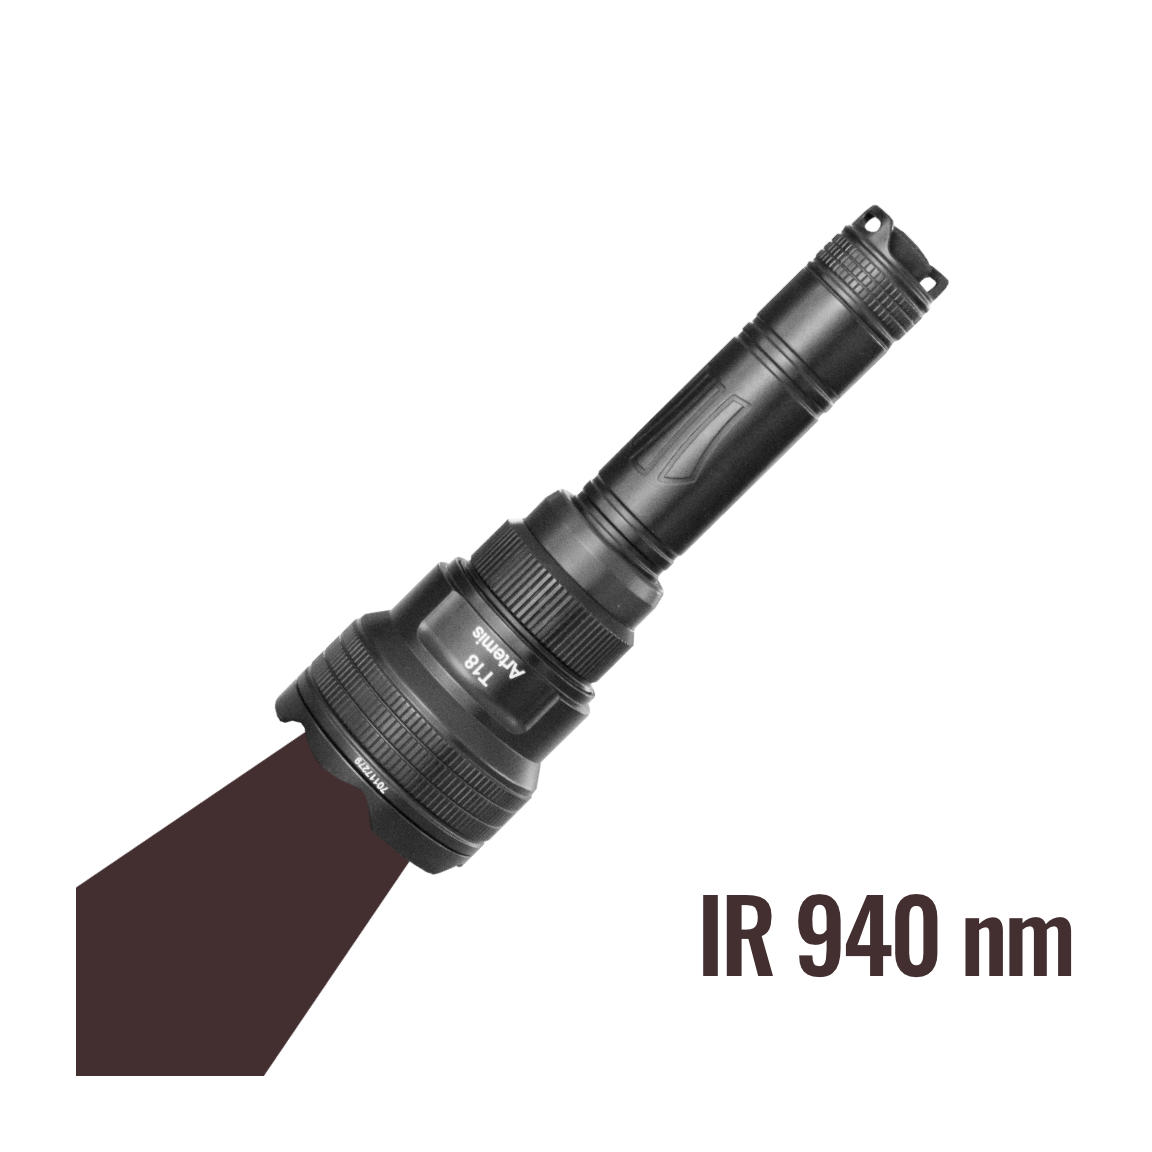 Brinyte T18 con luz infrarroja 940 nm (invisible)